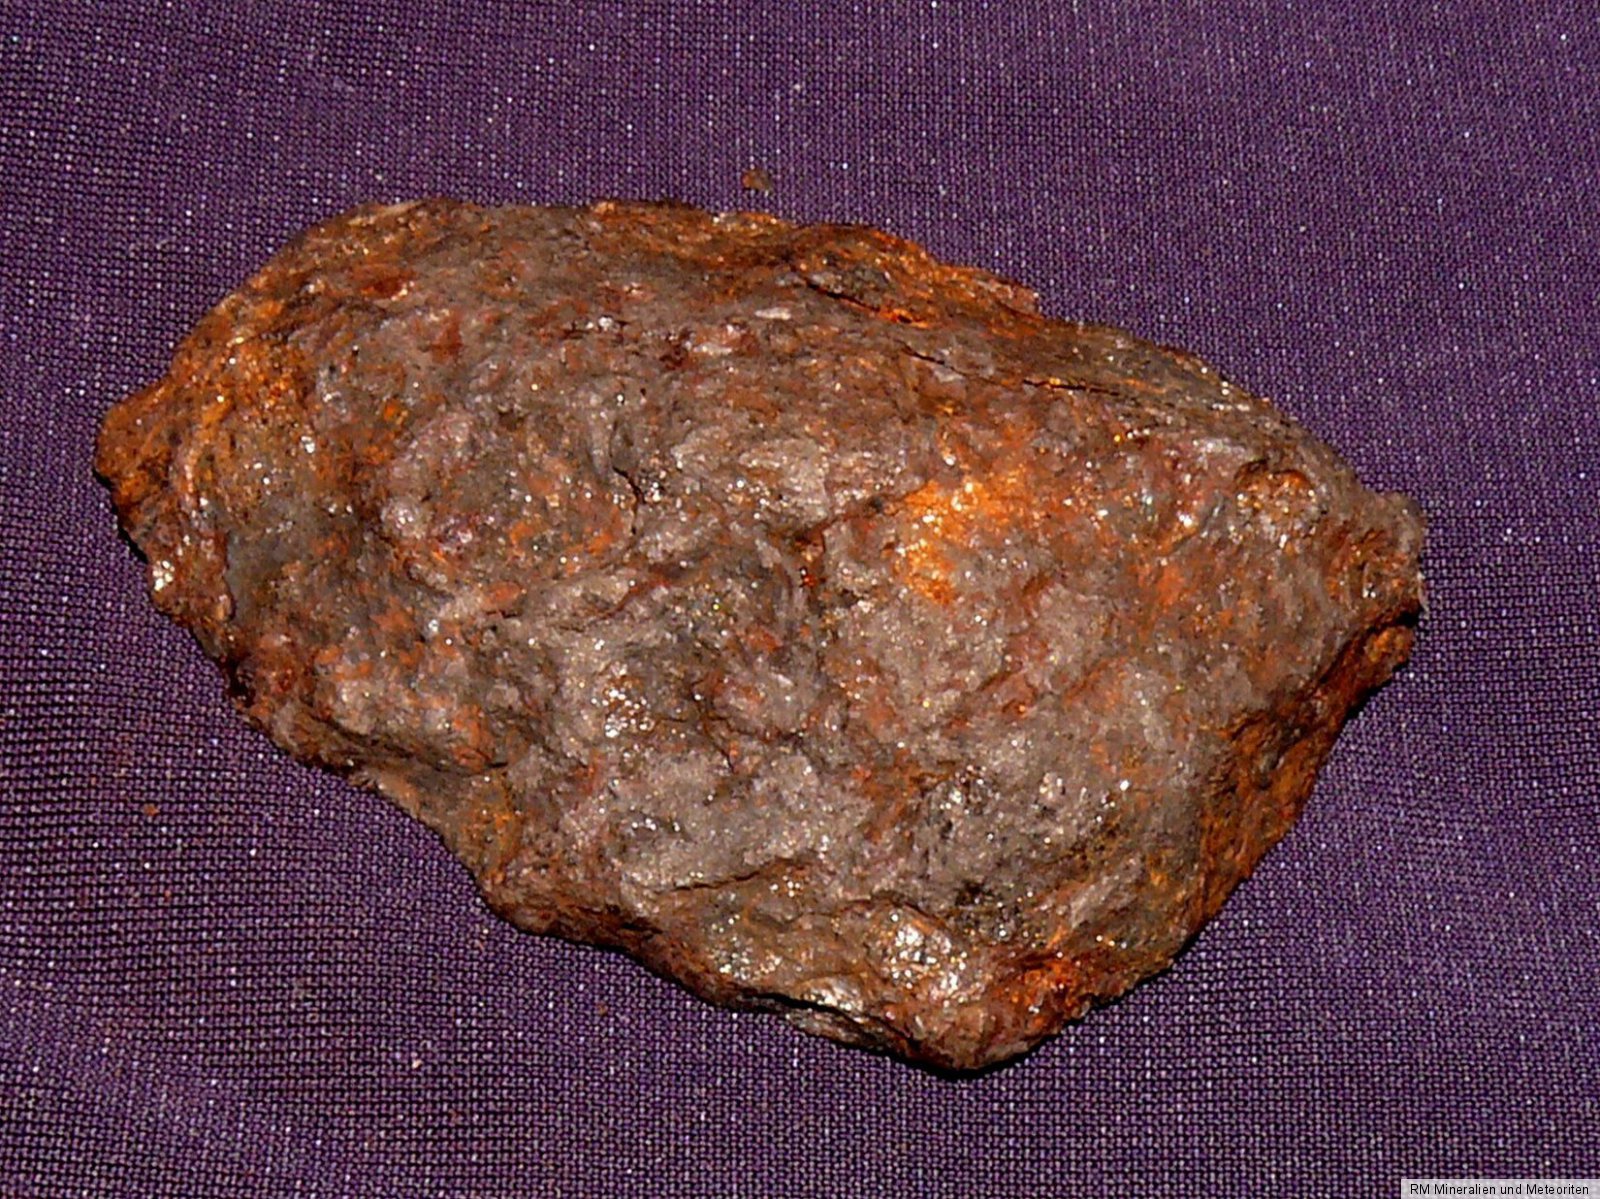 olivine meteorite